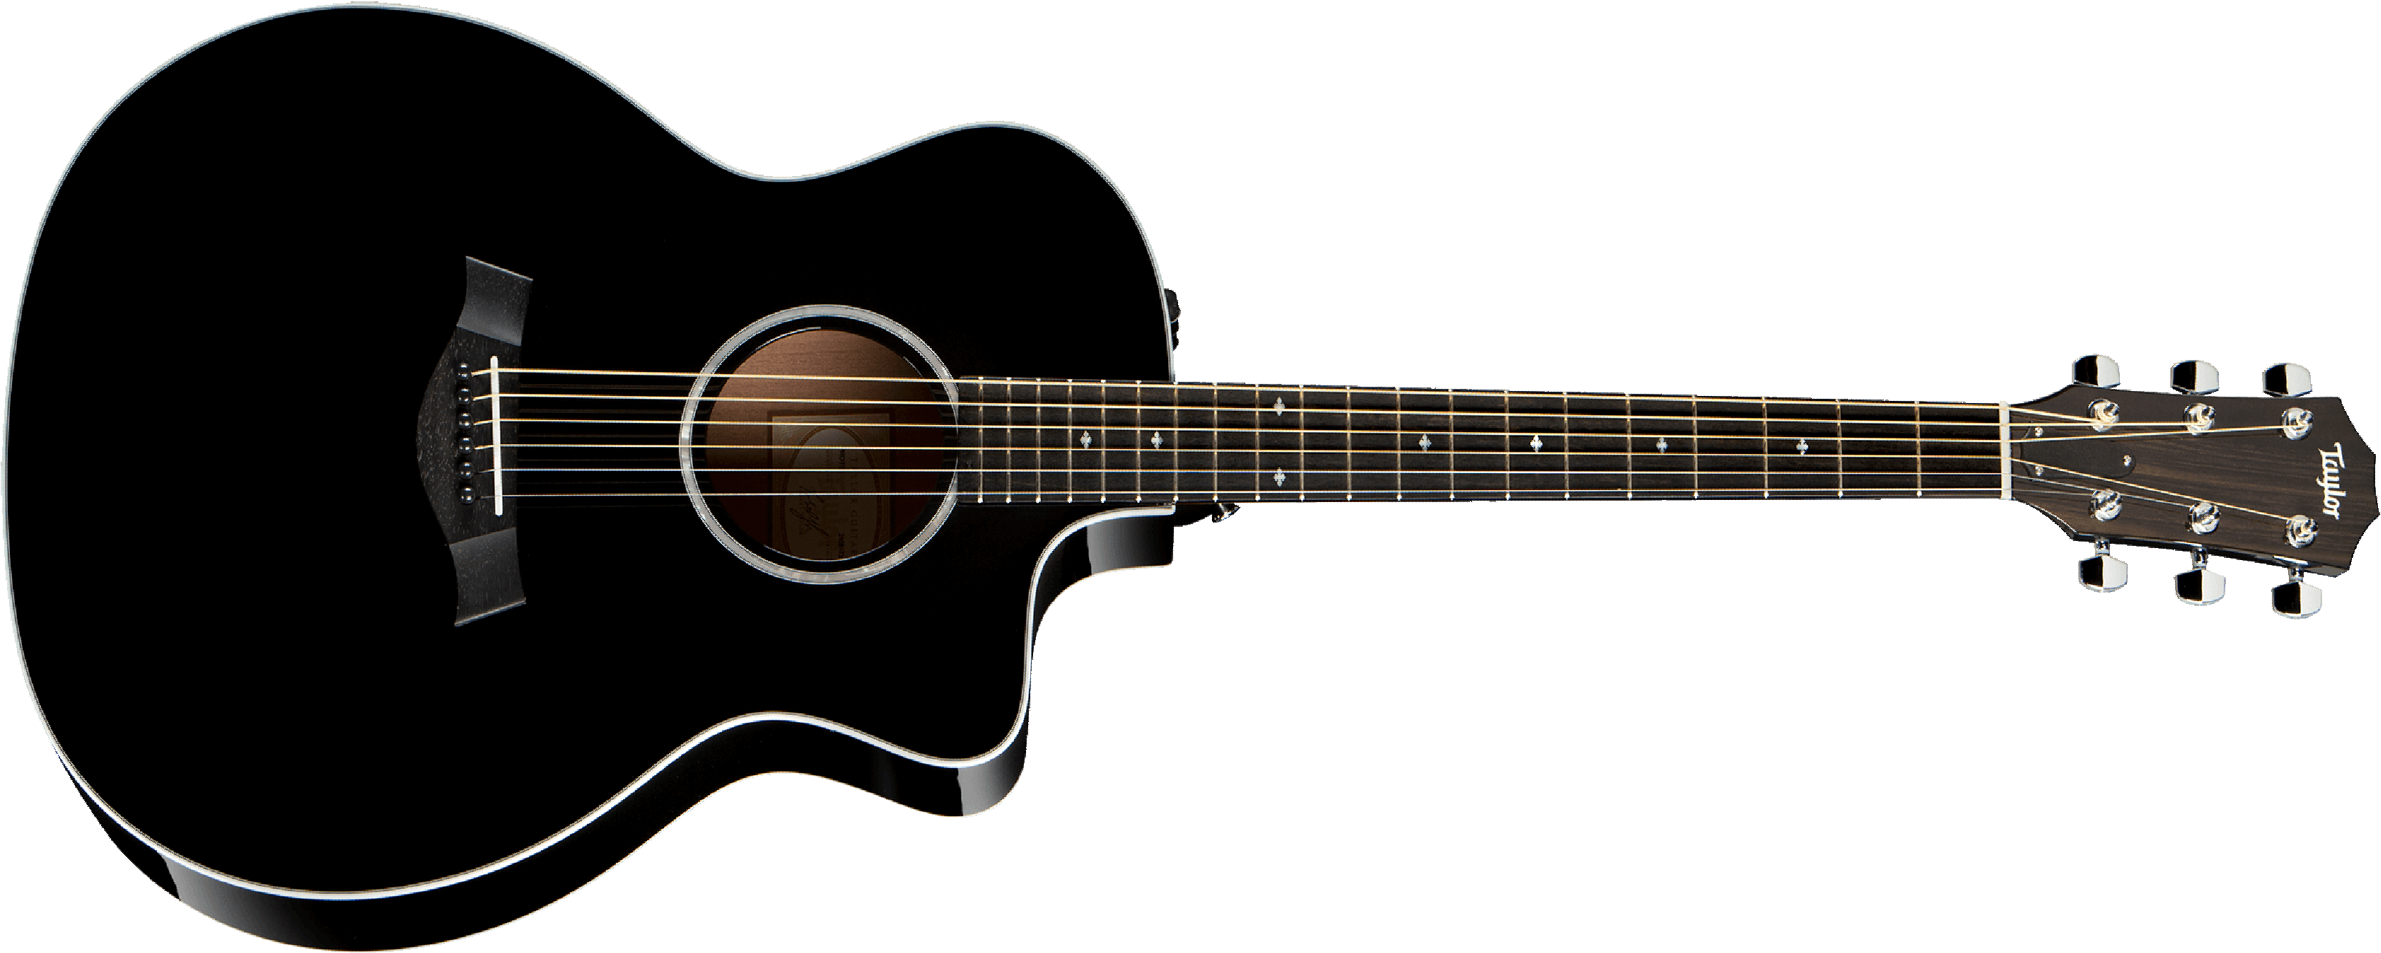 Taylor 214ce-blk Dlx Grand Auditorium Cw Epicea Palissandre Eb Es2 - Black - Electro acoustic guitar - Main picture